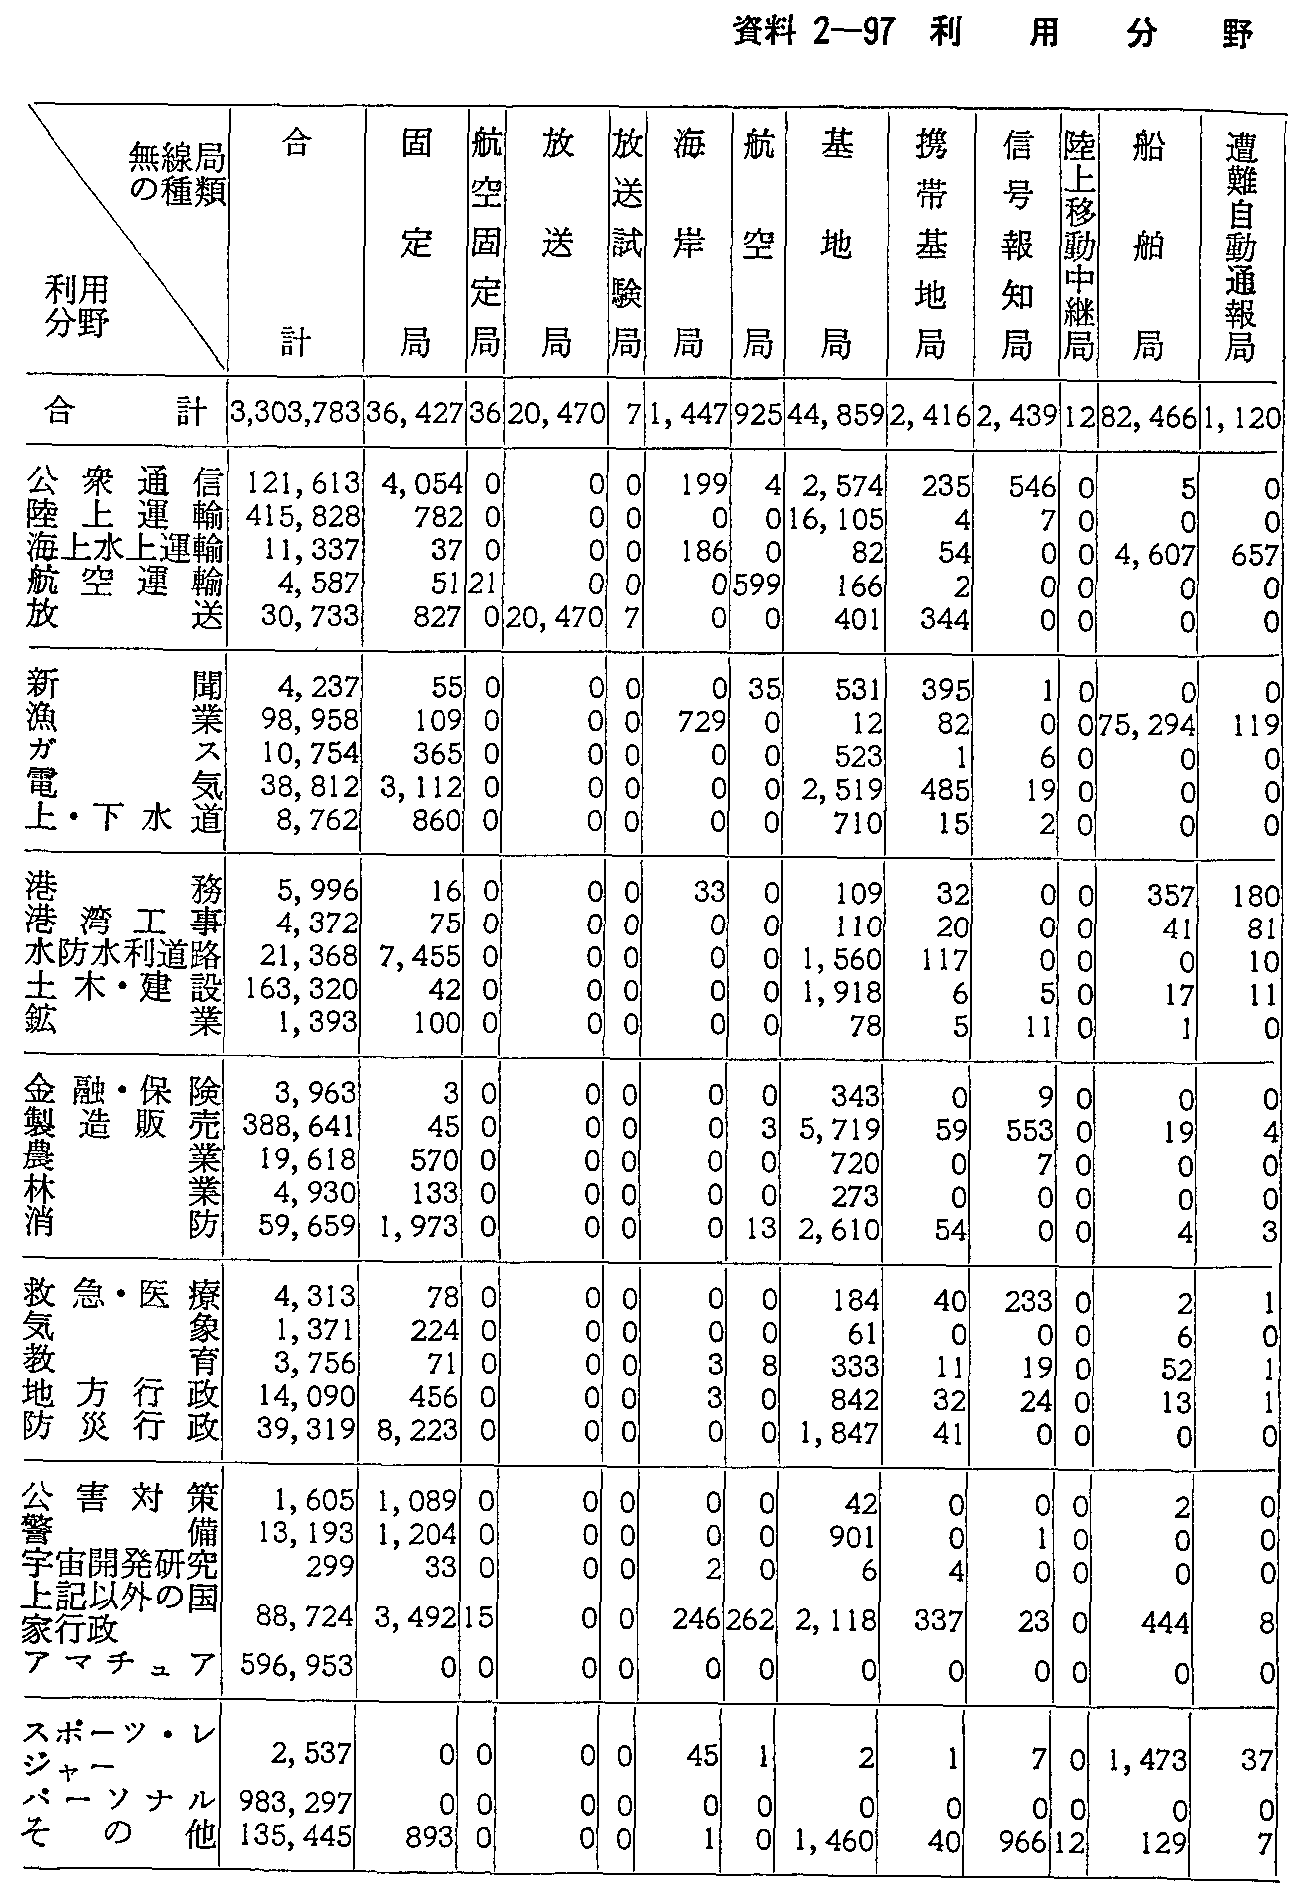 資料2-97 利用分野別無線局数(59年度末現在)(1)